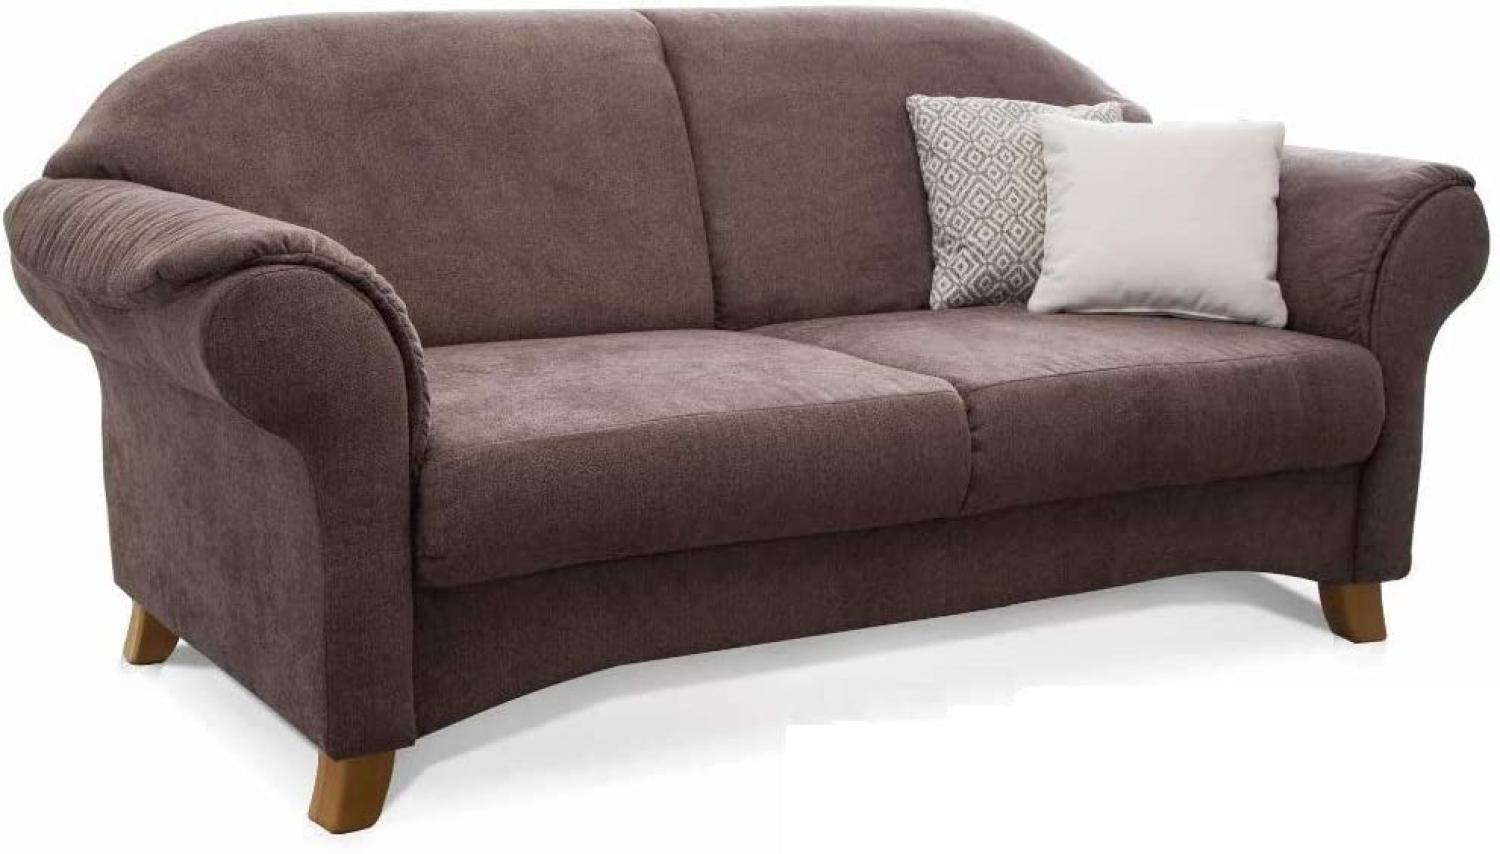 Cavadore 3-Sitzer Sofa Maifayr mit Federkern / Moderne 3-sitzige Couch im Landhausstil mit Holzfüßen / 194 x 90 x 90 / braun Bild 1